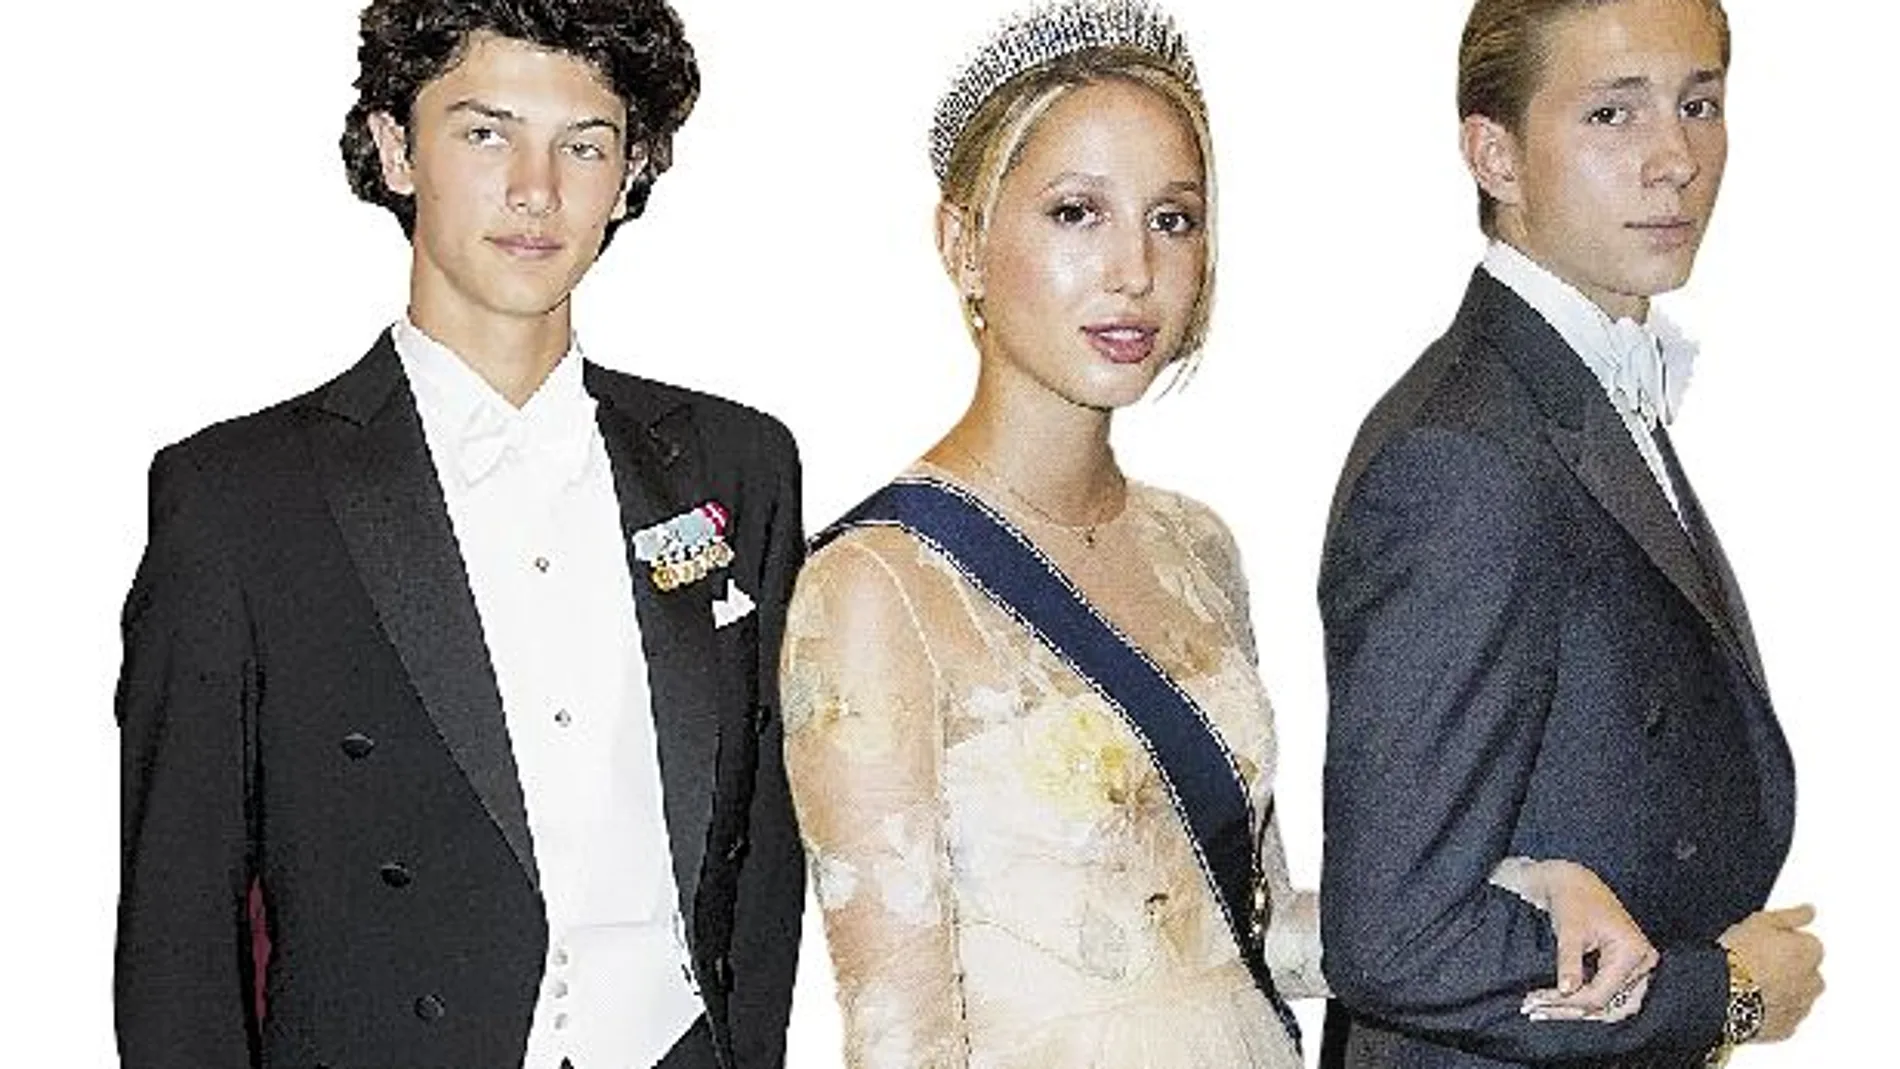 De izquierda a derecha, los príncipes Nicolás de Dinamarca y Olympia y Constantin de Grecia, que acapararon todas las miradas